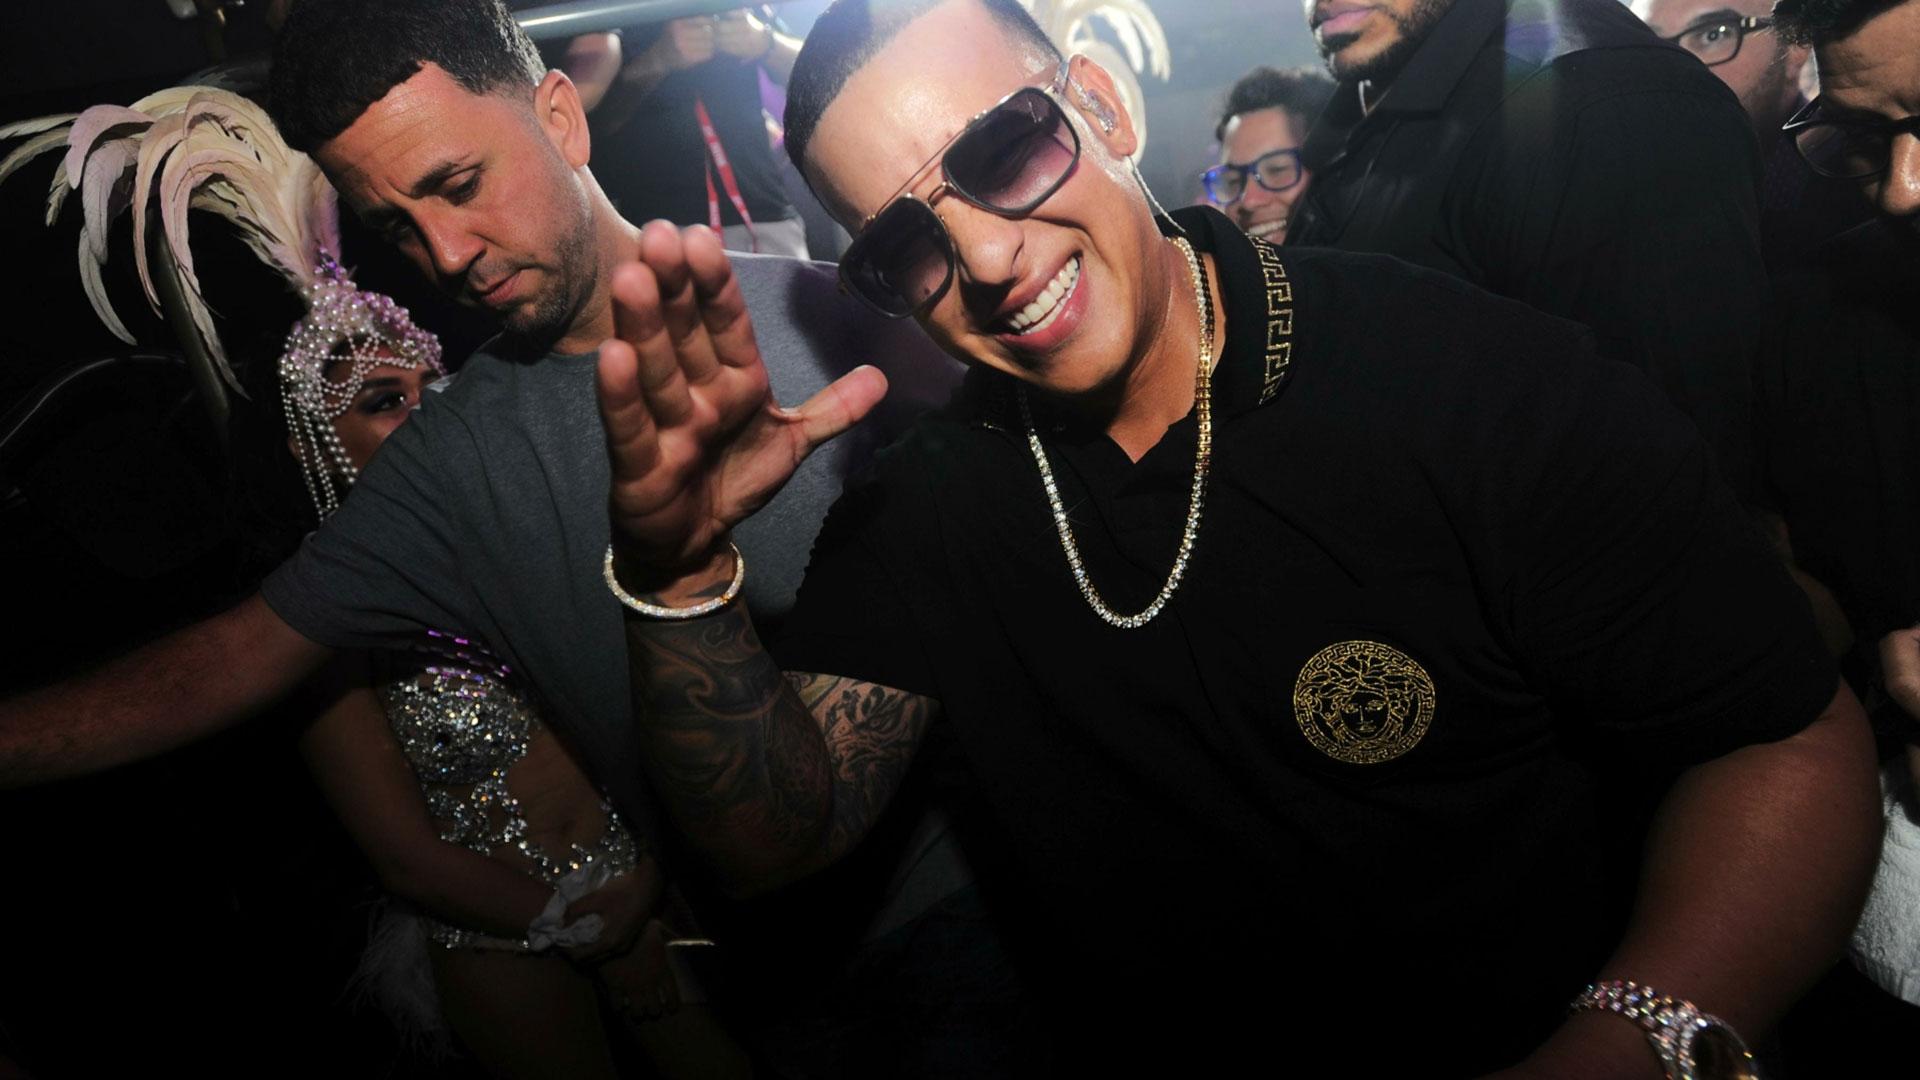 Se hace pasar por Daddy Yankee y le roba 2.3 millones de dólares en joyas